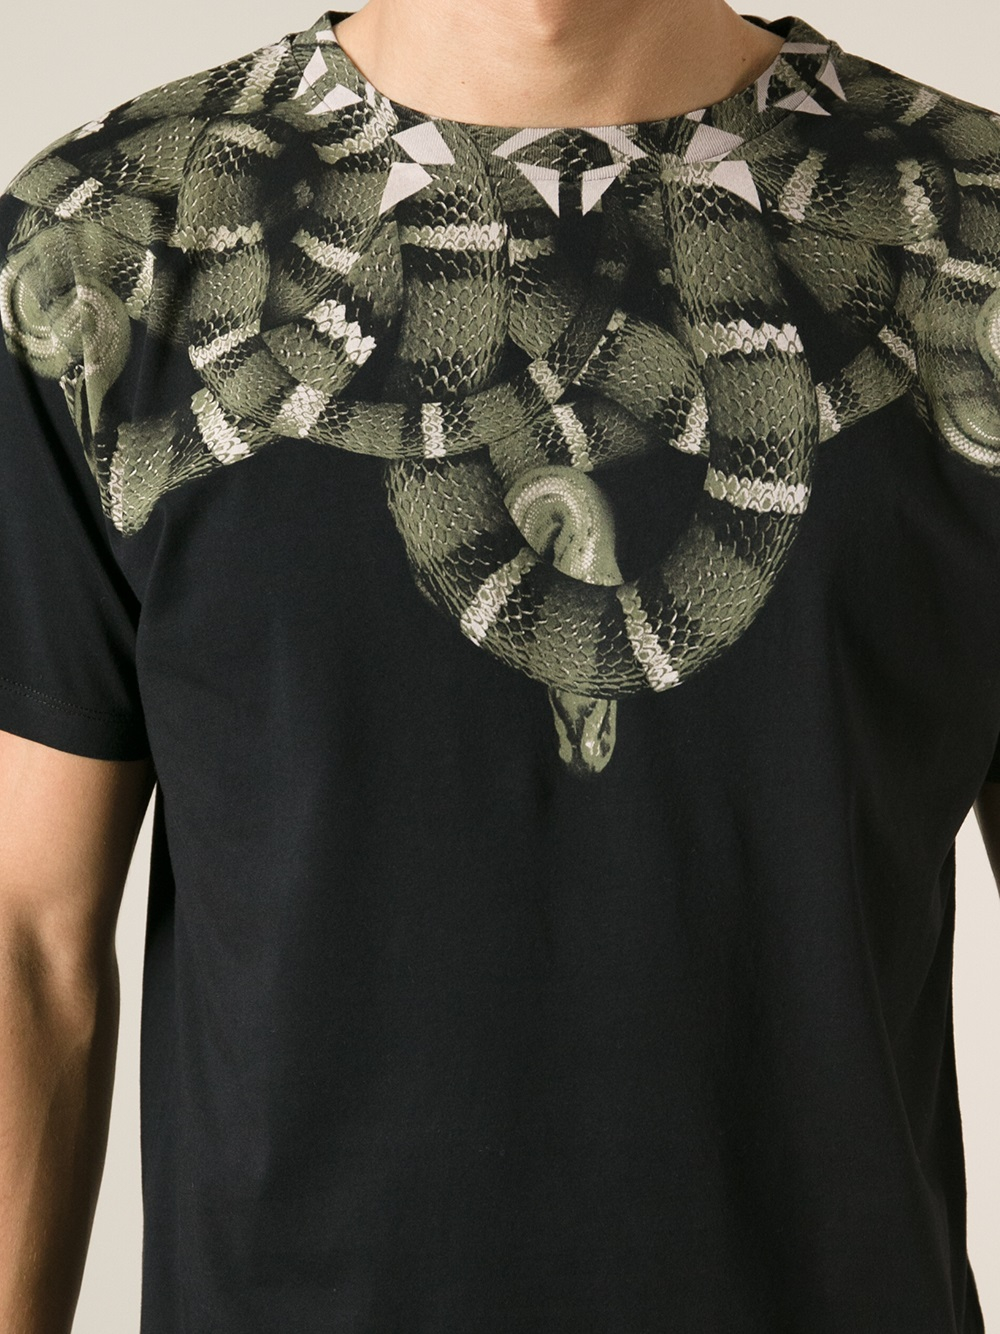 rive ned Udlænding Bevise Marcelo Burlon Snake Print Tshirt in Black for Men | Lyst UK